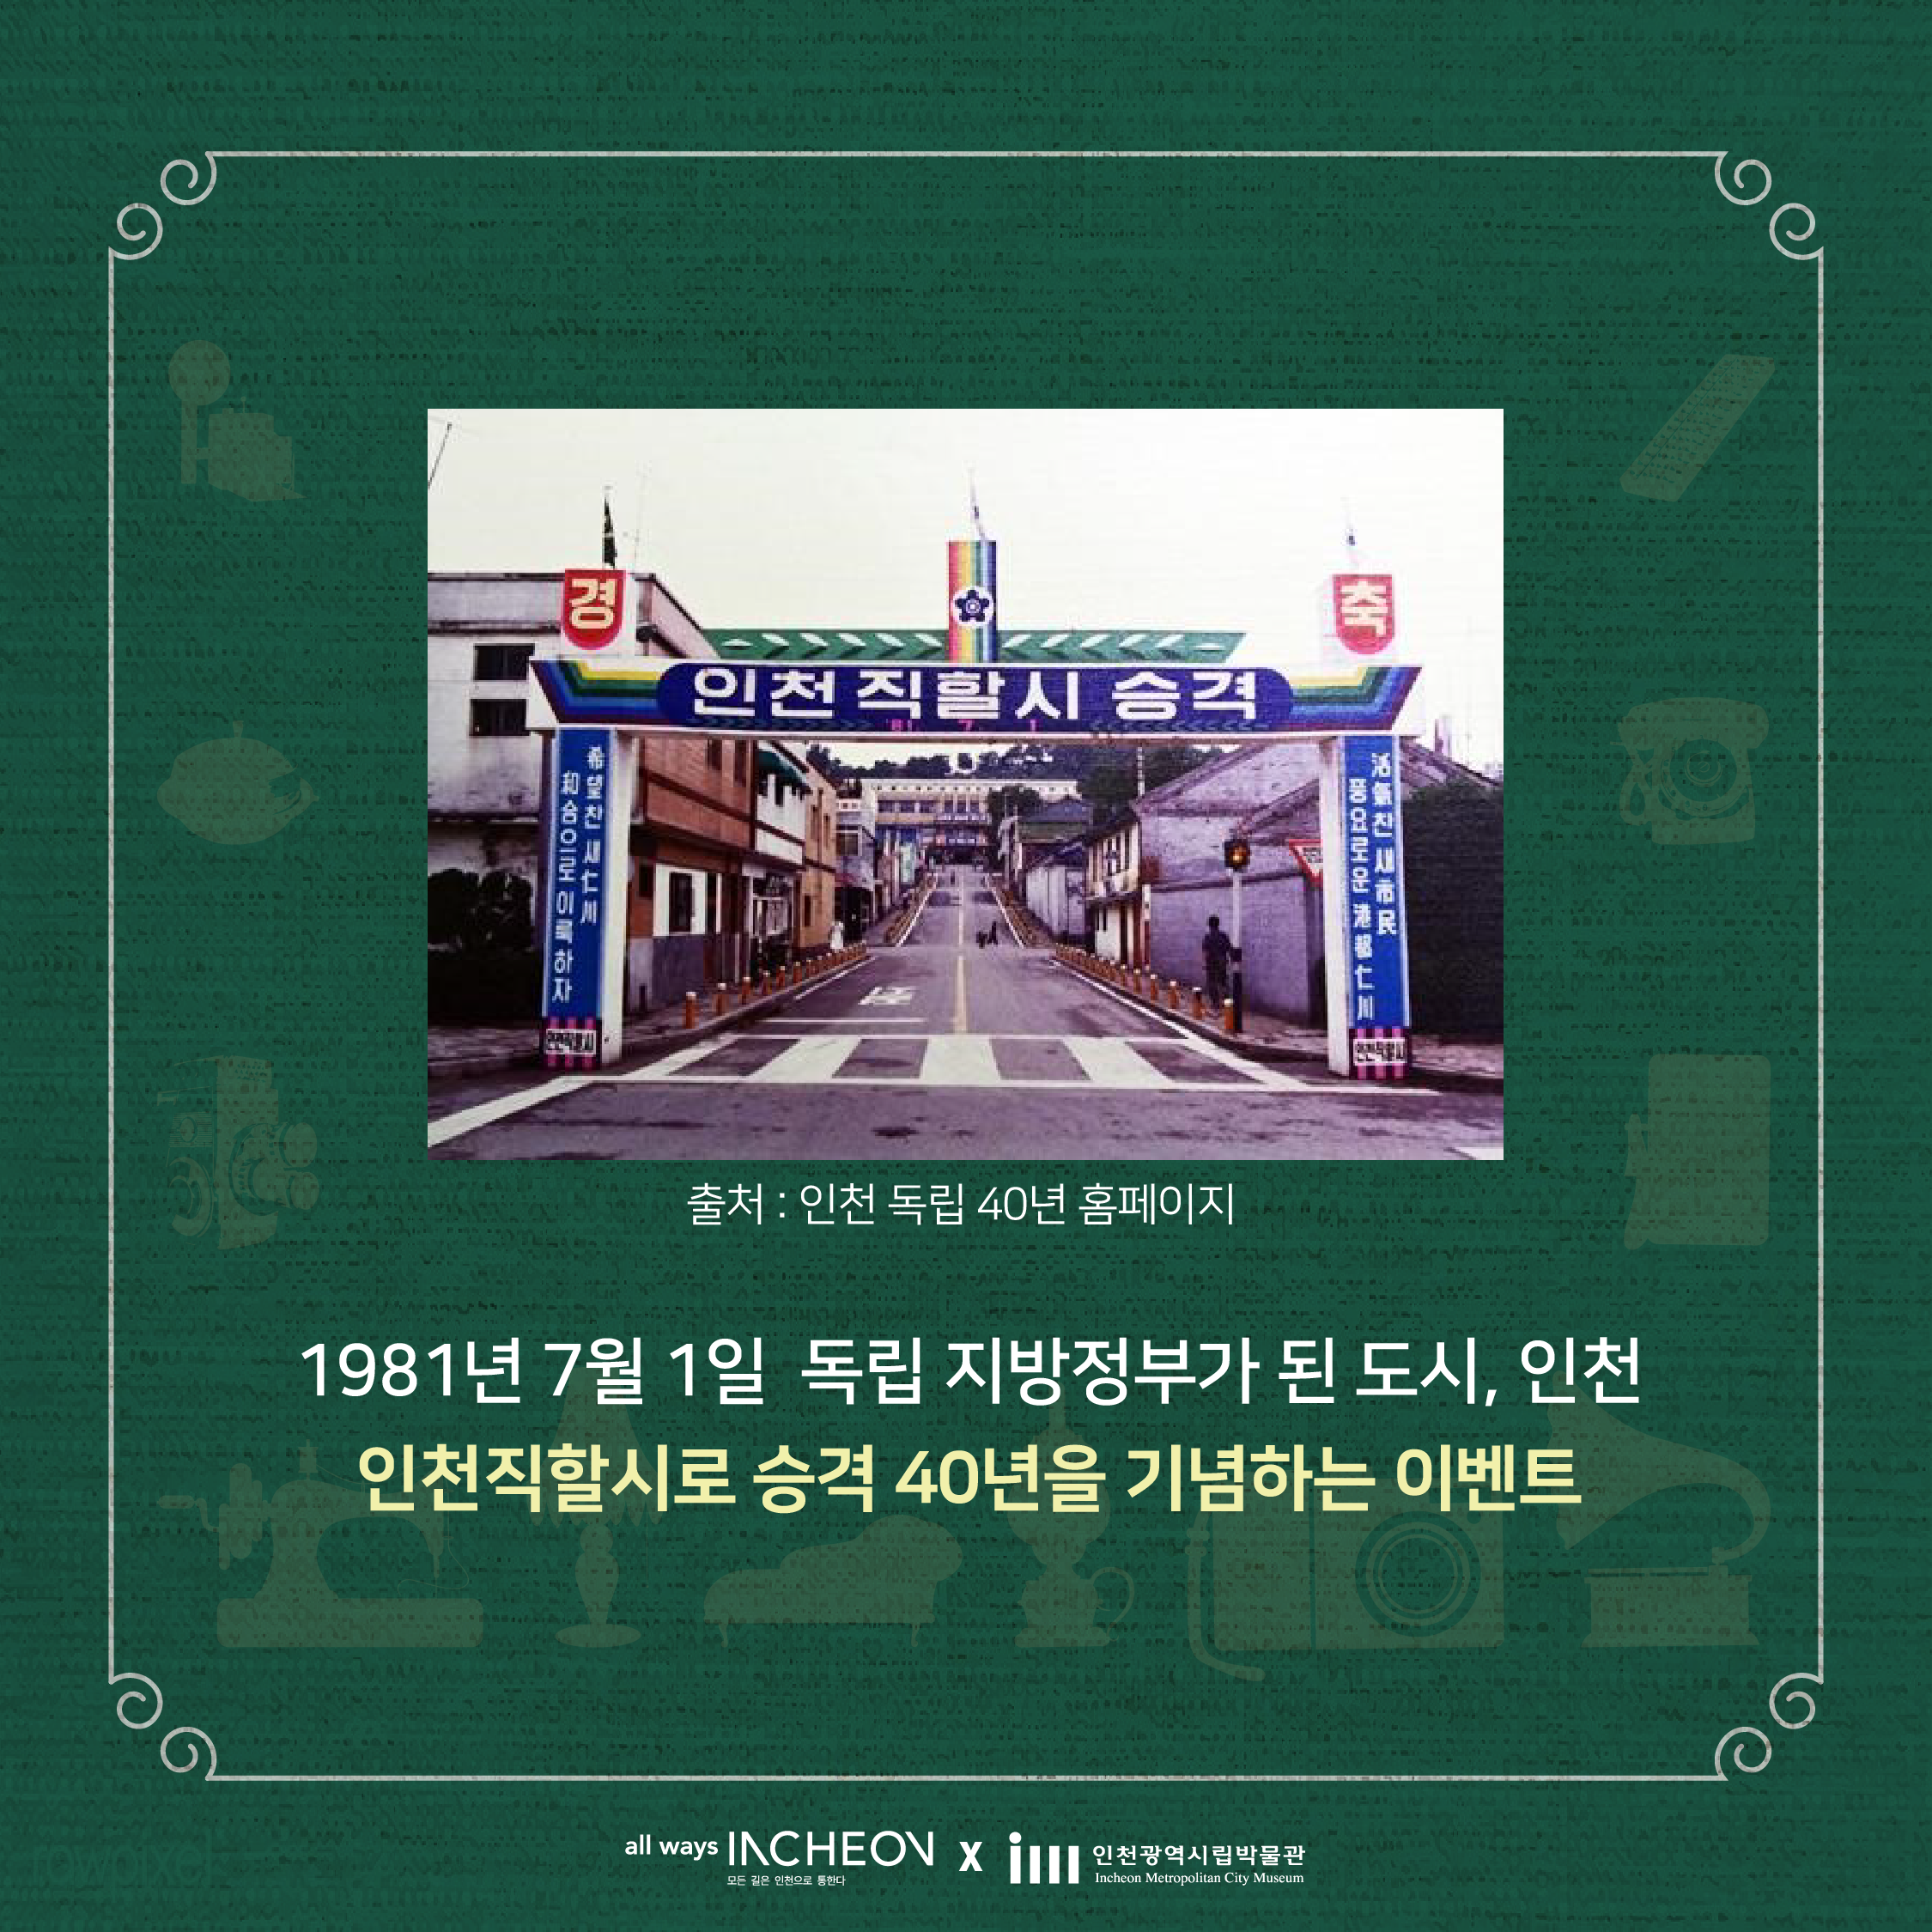 출처 : 인천 독립 40년 홈페이지
1981년 7월 1일 독립 지방정부가 된 도시, 인천 인천직할시로 승격 40년을 기념하는 이벤트
